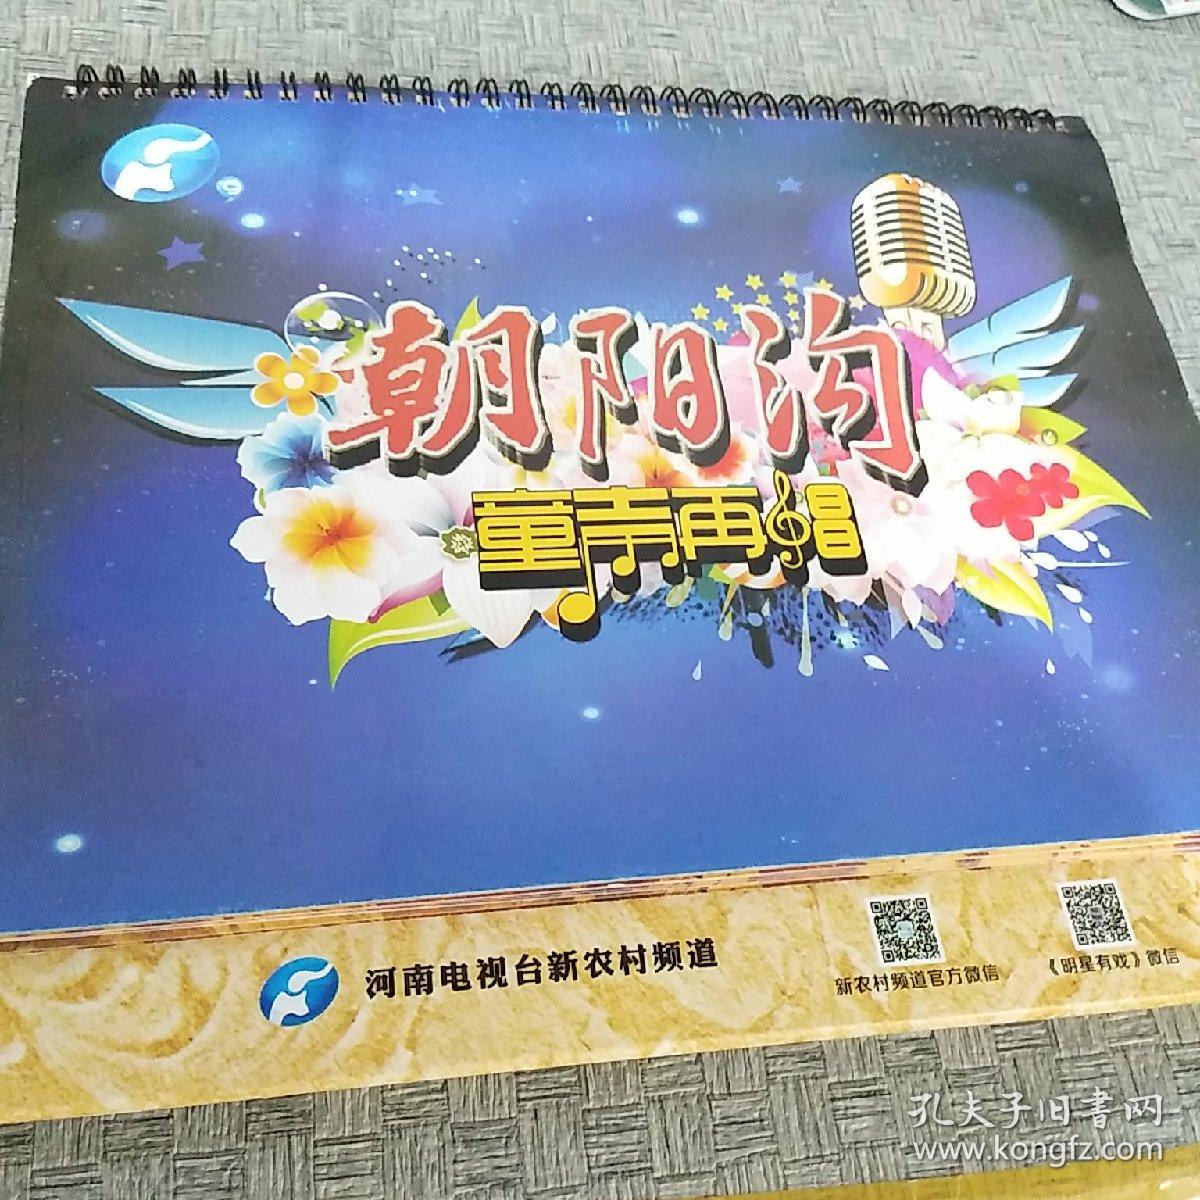 2013年河南电视台新农村频道 朝阳沟童声再唱